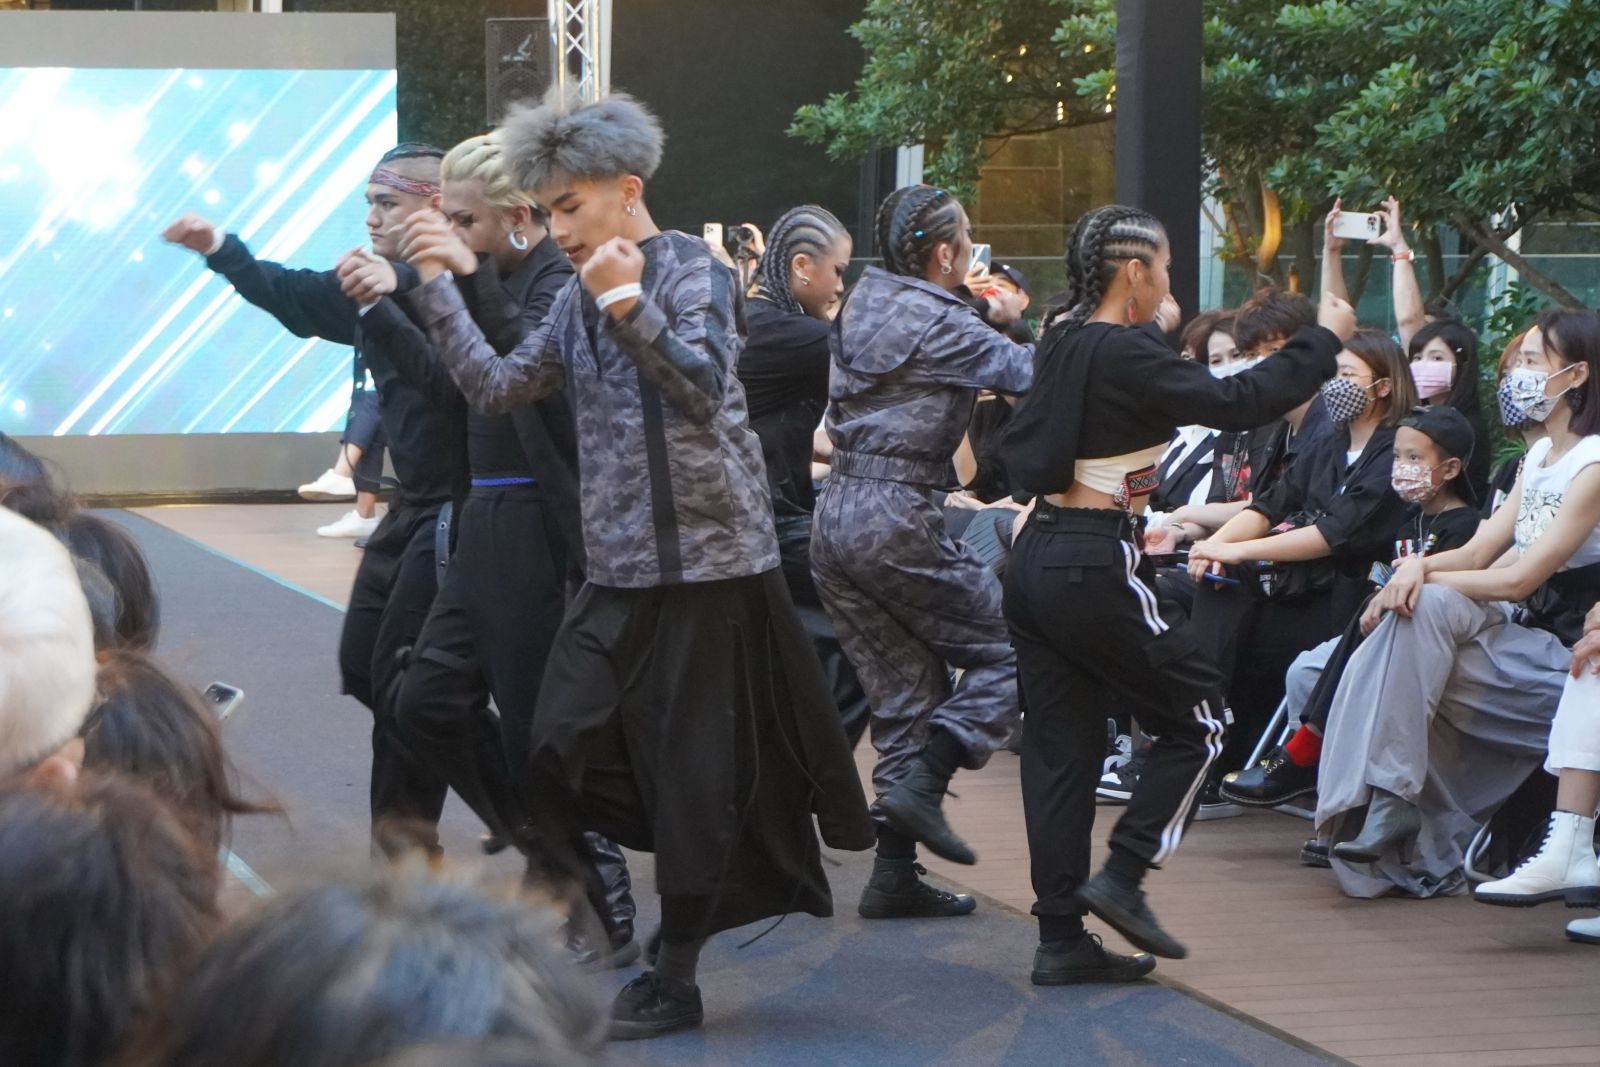 ▲舞蹈中段融合台灣原住民特色，令在場觀眾印象深刻。(圖/新北原住民族行政局提供)